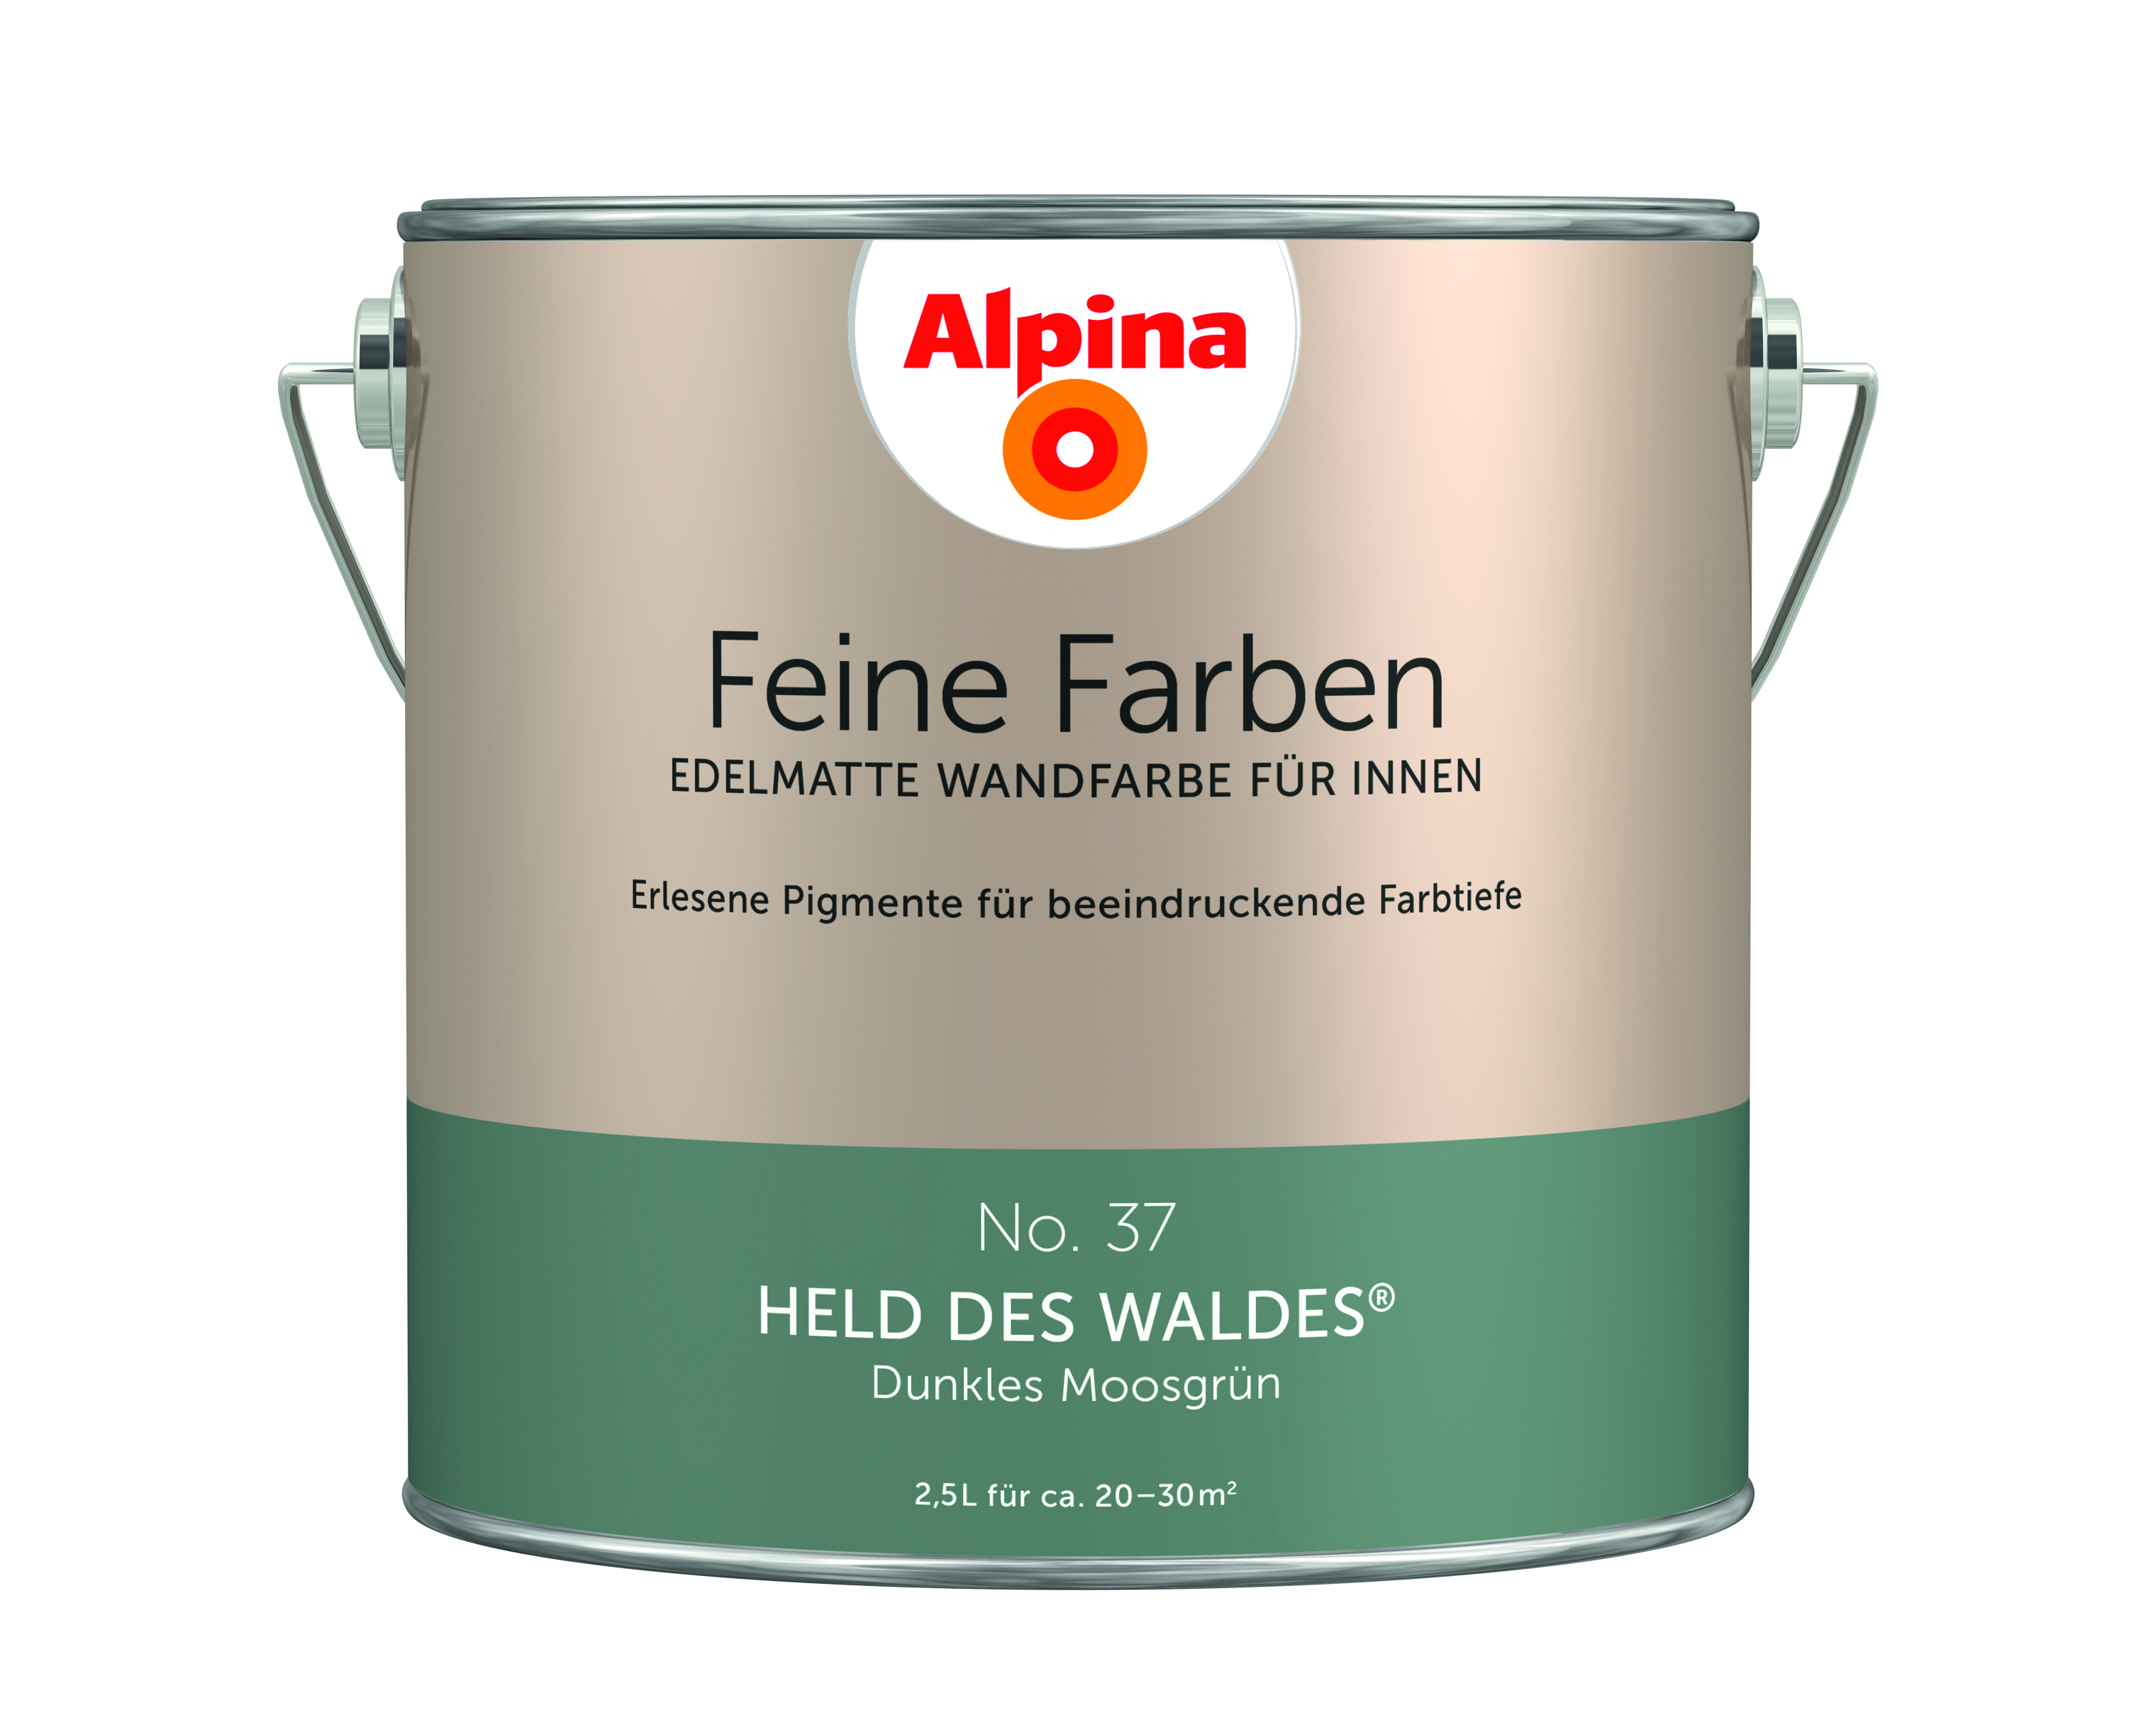 Alpina Feine Farben No. 37, Held des Waldes